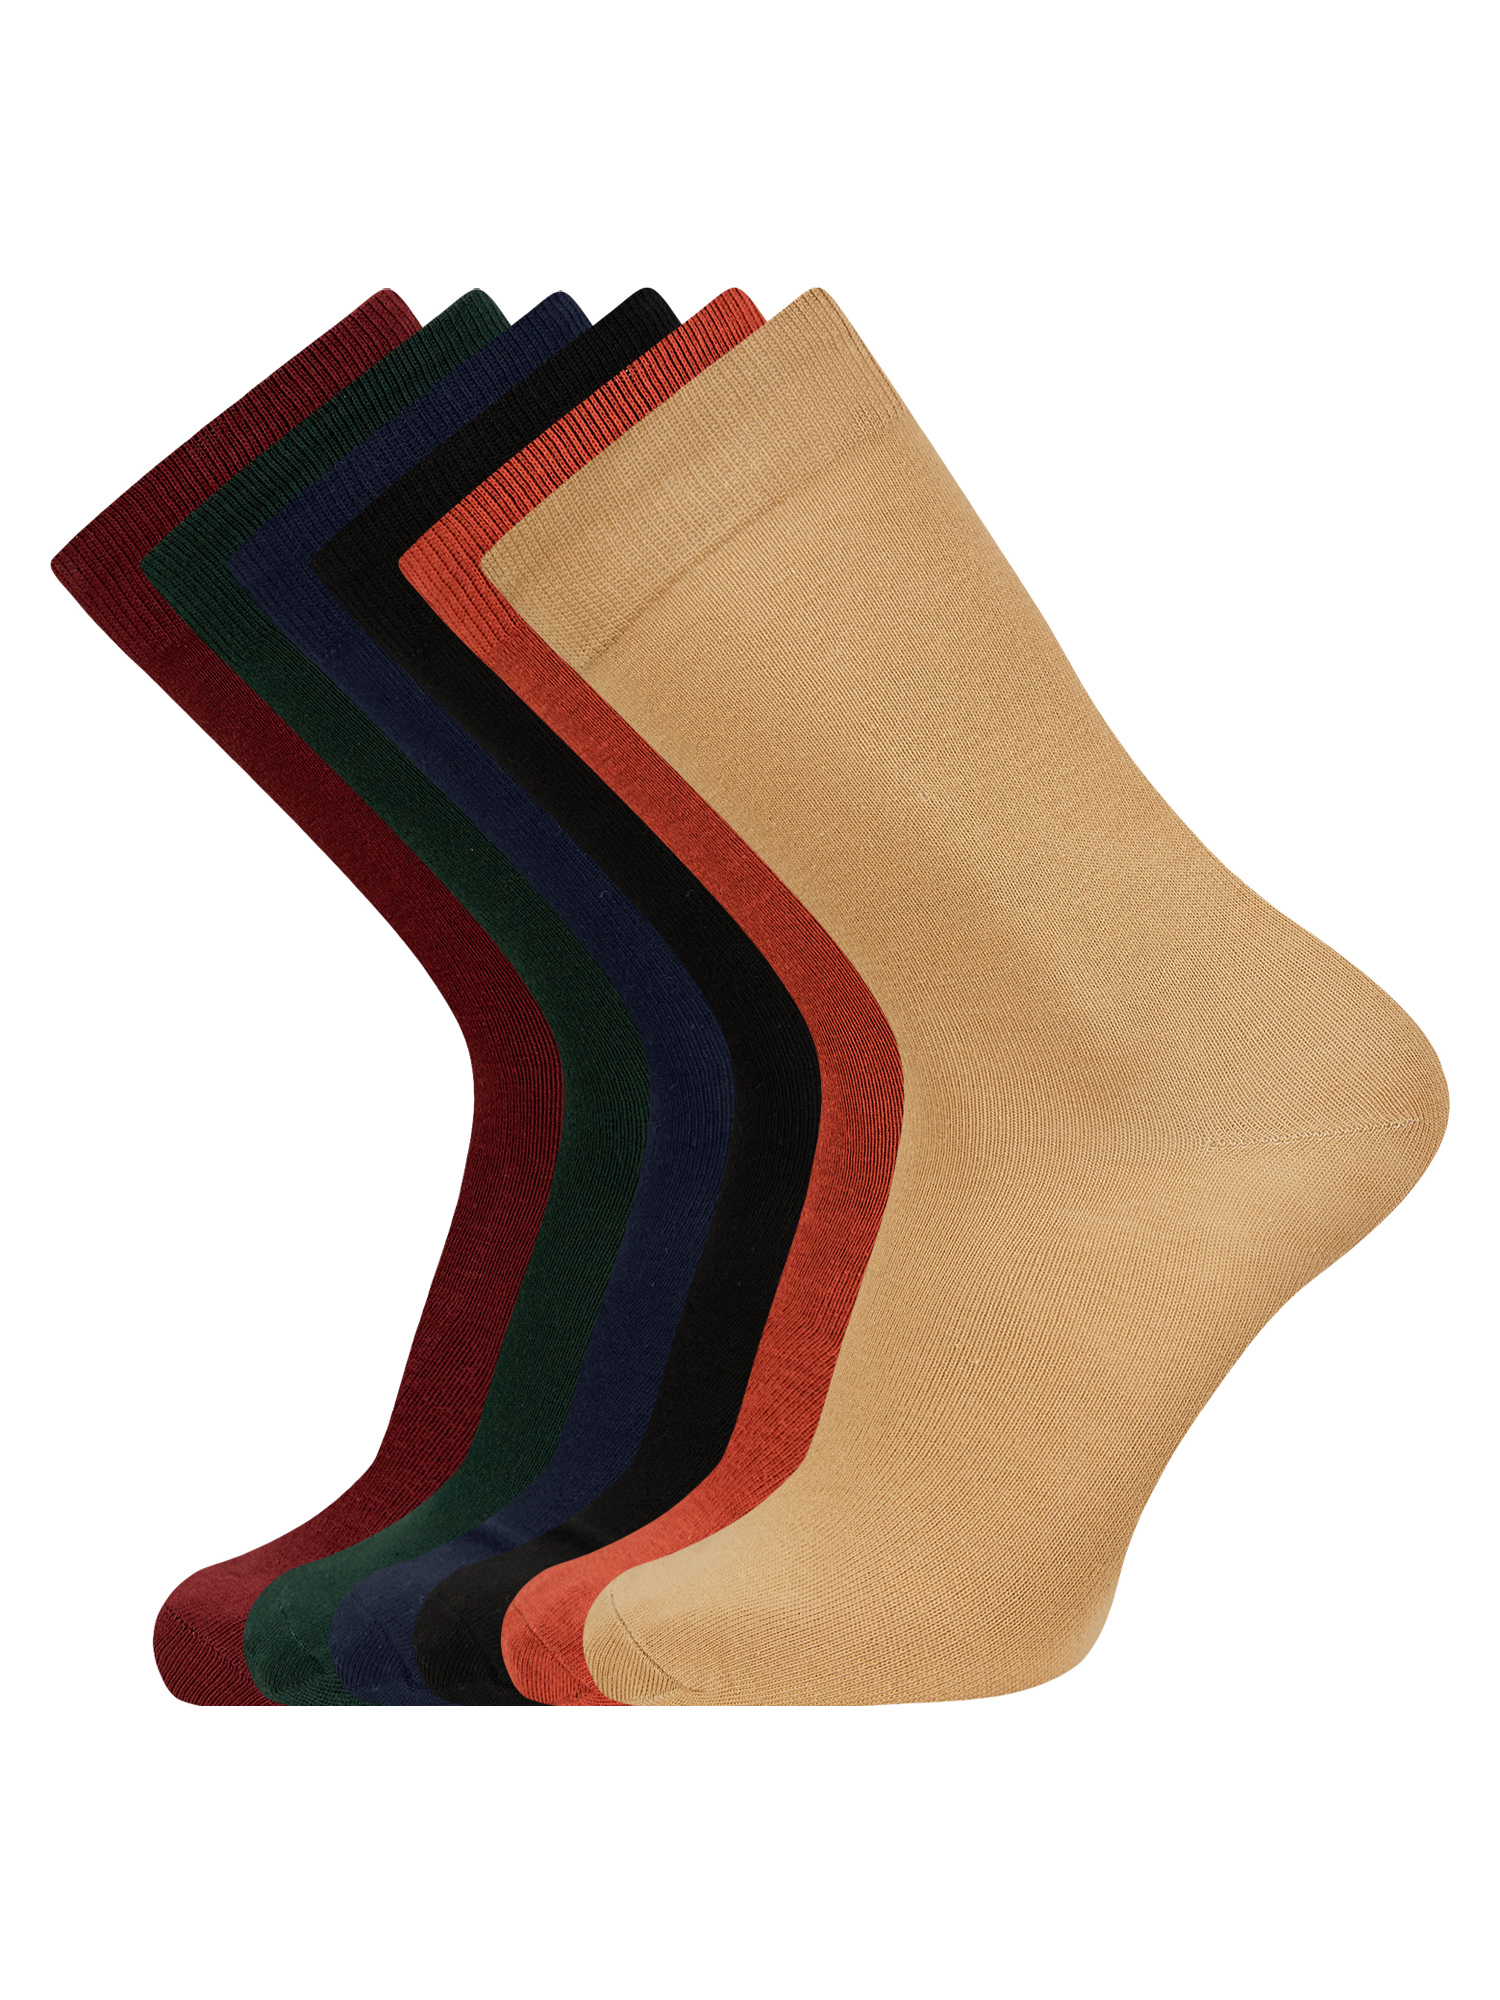 Комплект носков мужских oodji 7B263001T6 разноцветных 44-47